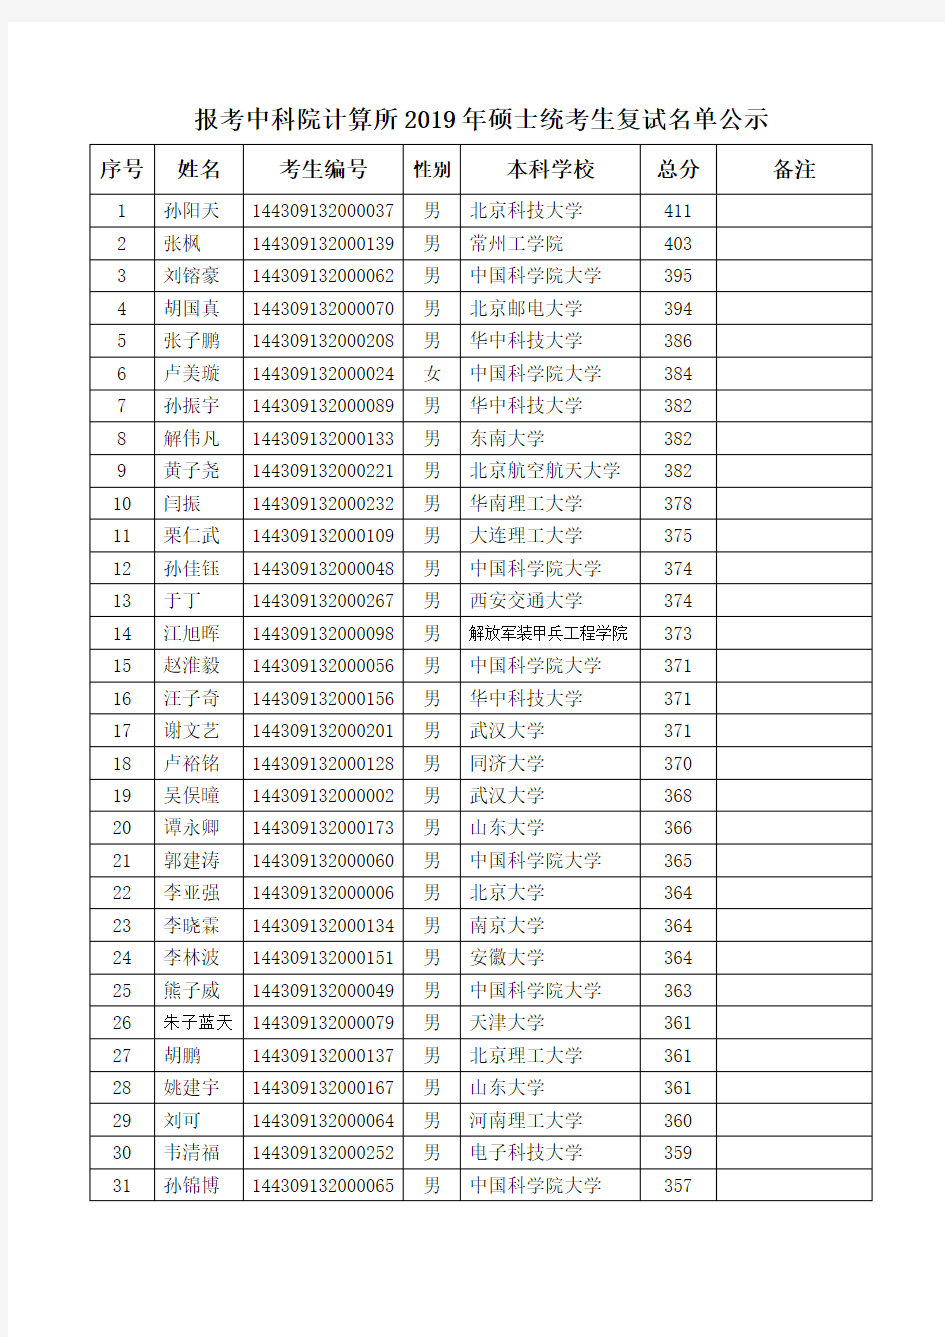 中国科学院计算所2019年硕士统考生复试名单公示